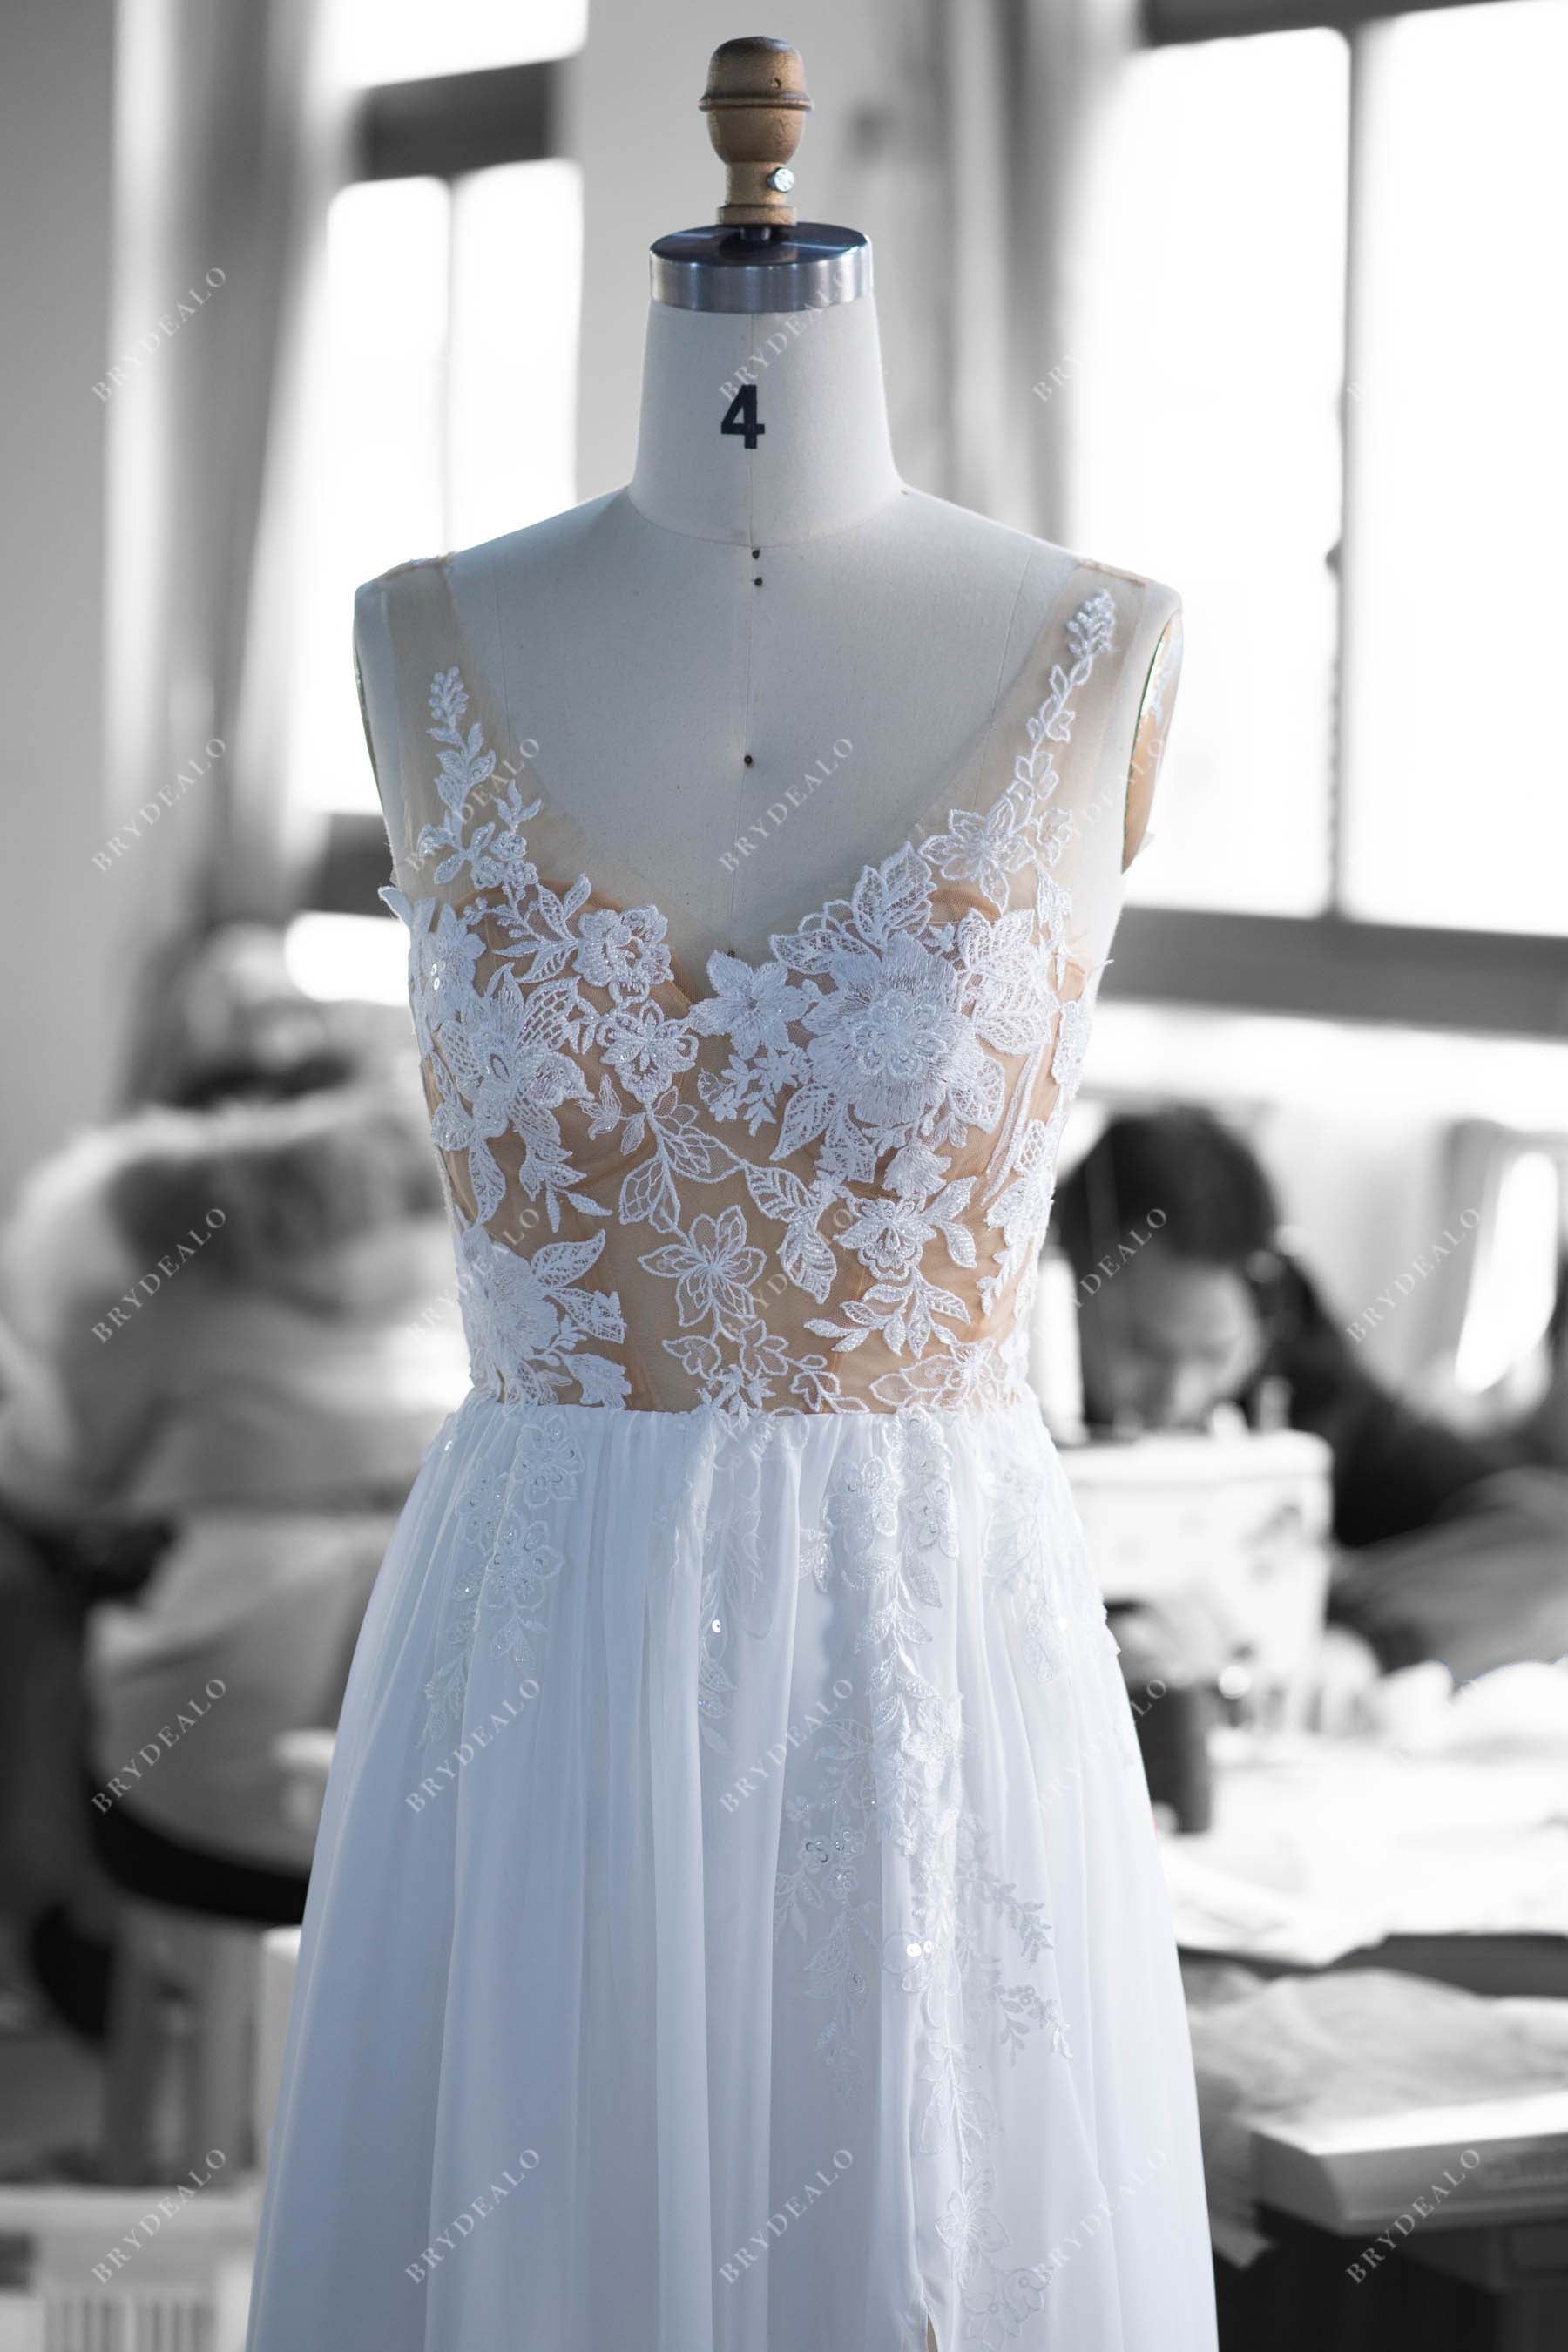 V-neck lace wedding dress